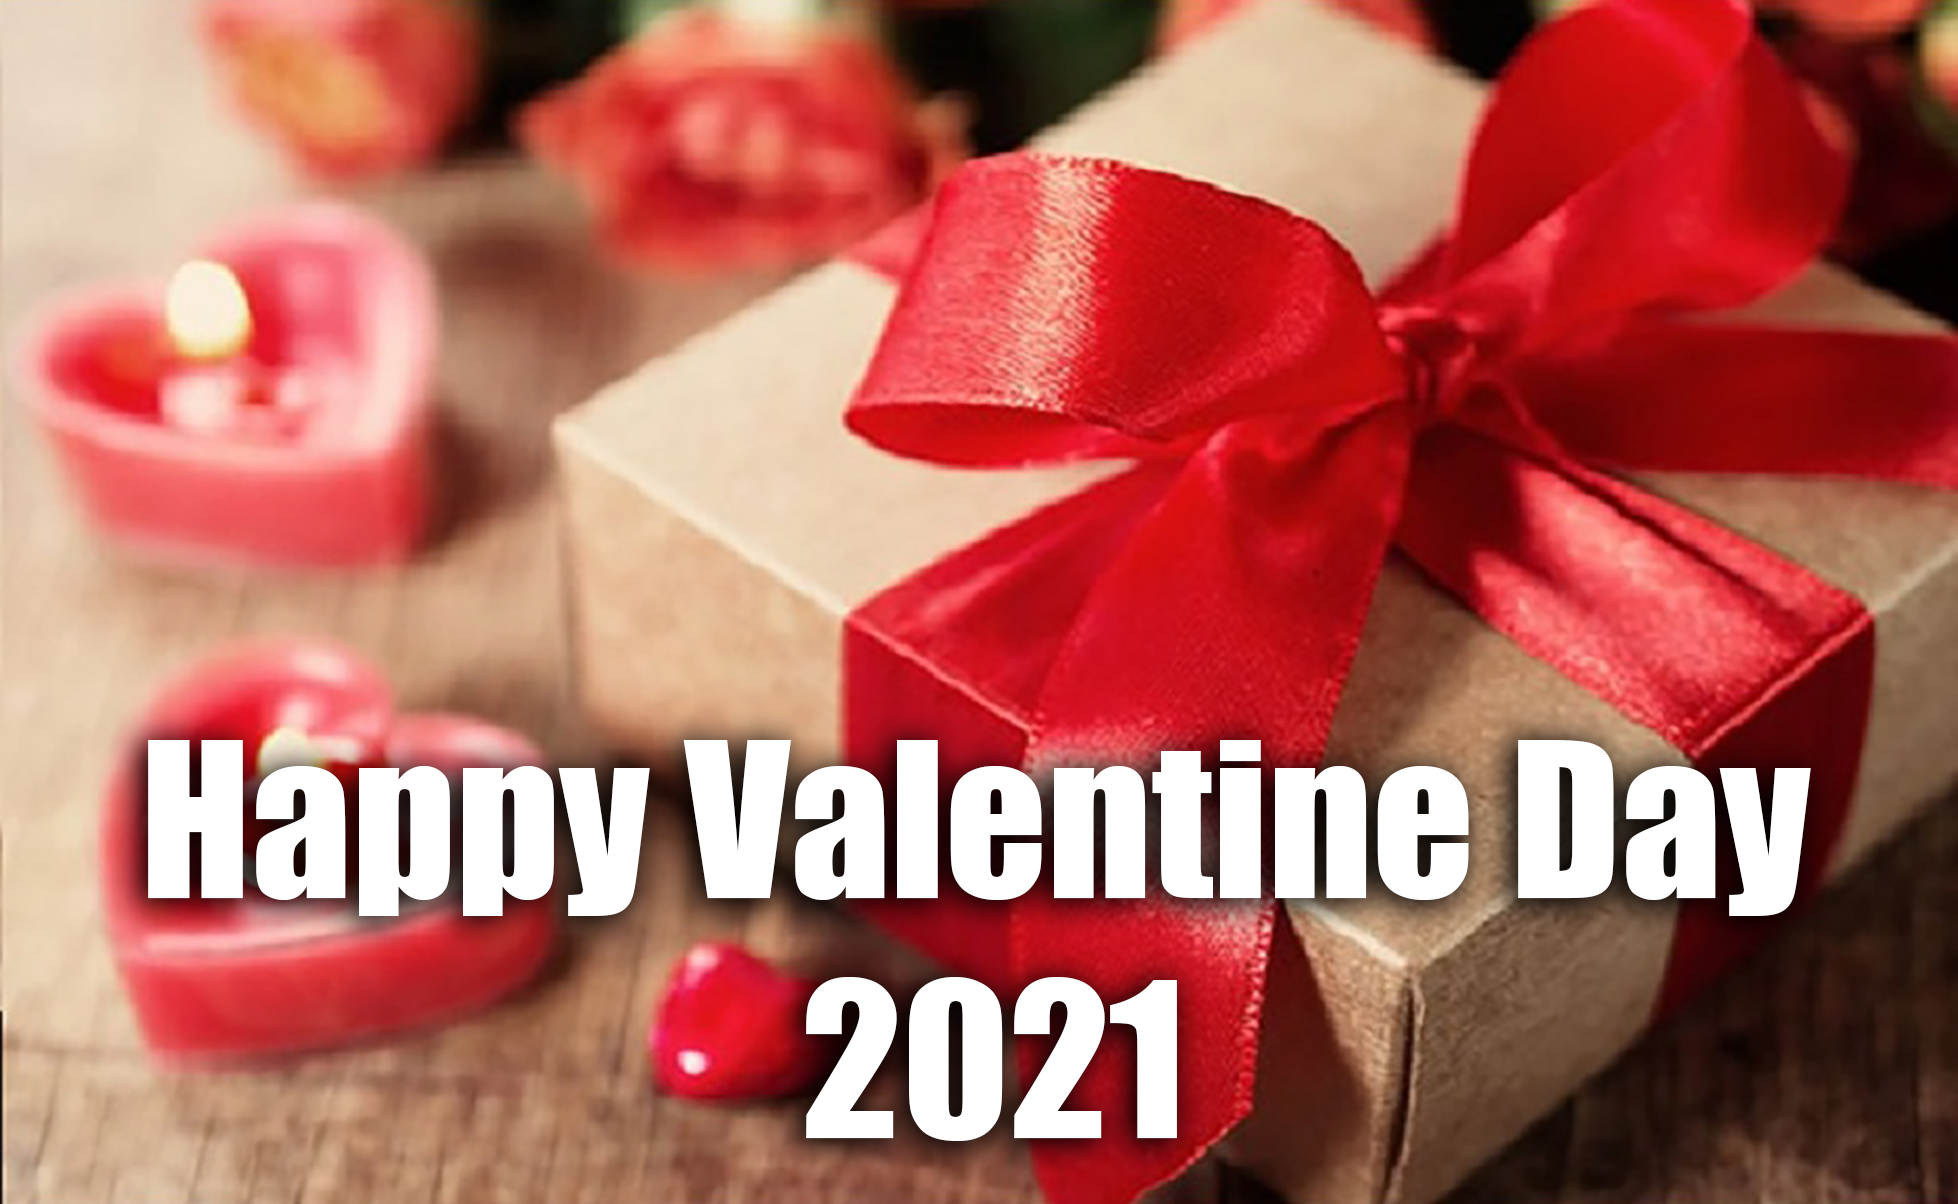 Happy Valentine Day 2021 Wishes, Images, Quotes, Messages: तुम ख्वाब हो तुम नींद हो, जीने की हर उम्मीद हो...अपने वैलेंटाइन को यहां से भेजें रोमांटिक शायरी, मैसेज